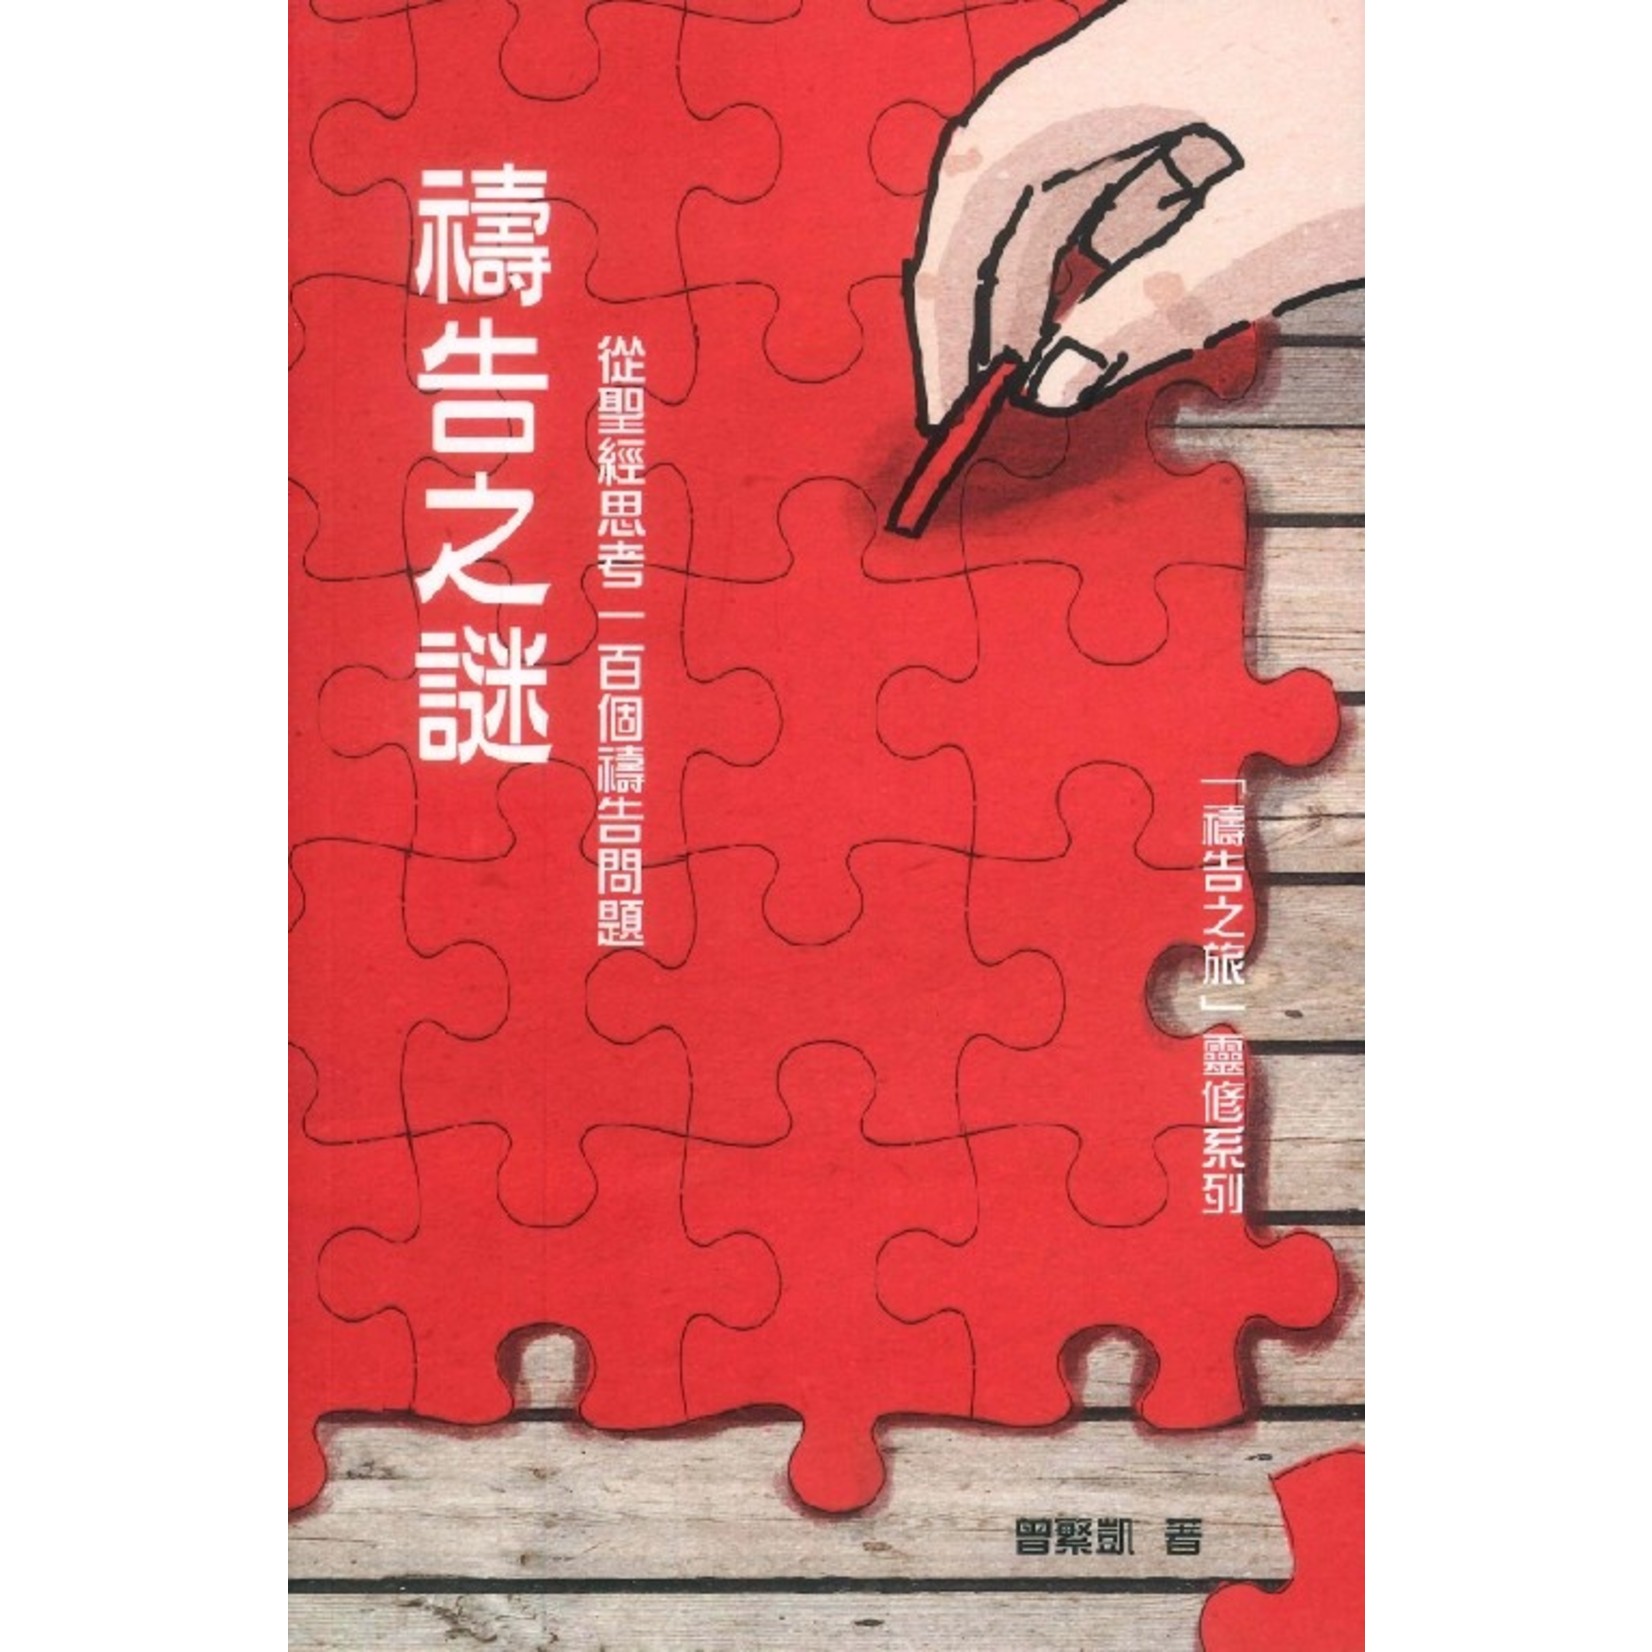 天道書樓 Tien Dao Publishing House 禱告之謎：從聖經思考一百個禱告問題